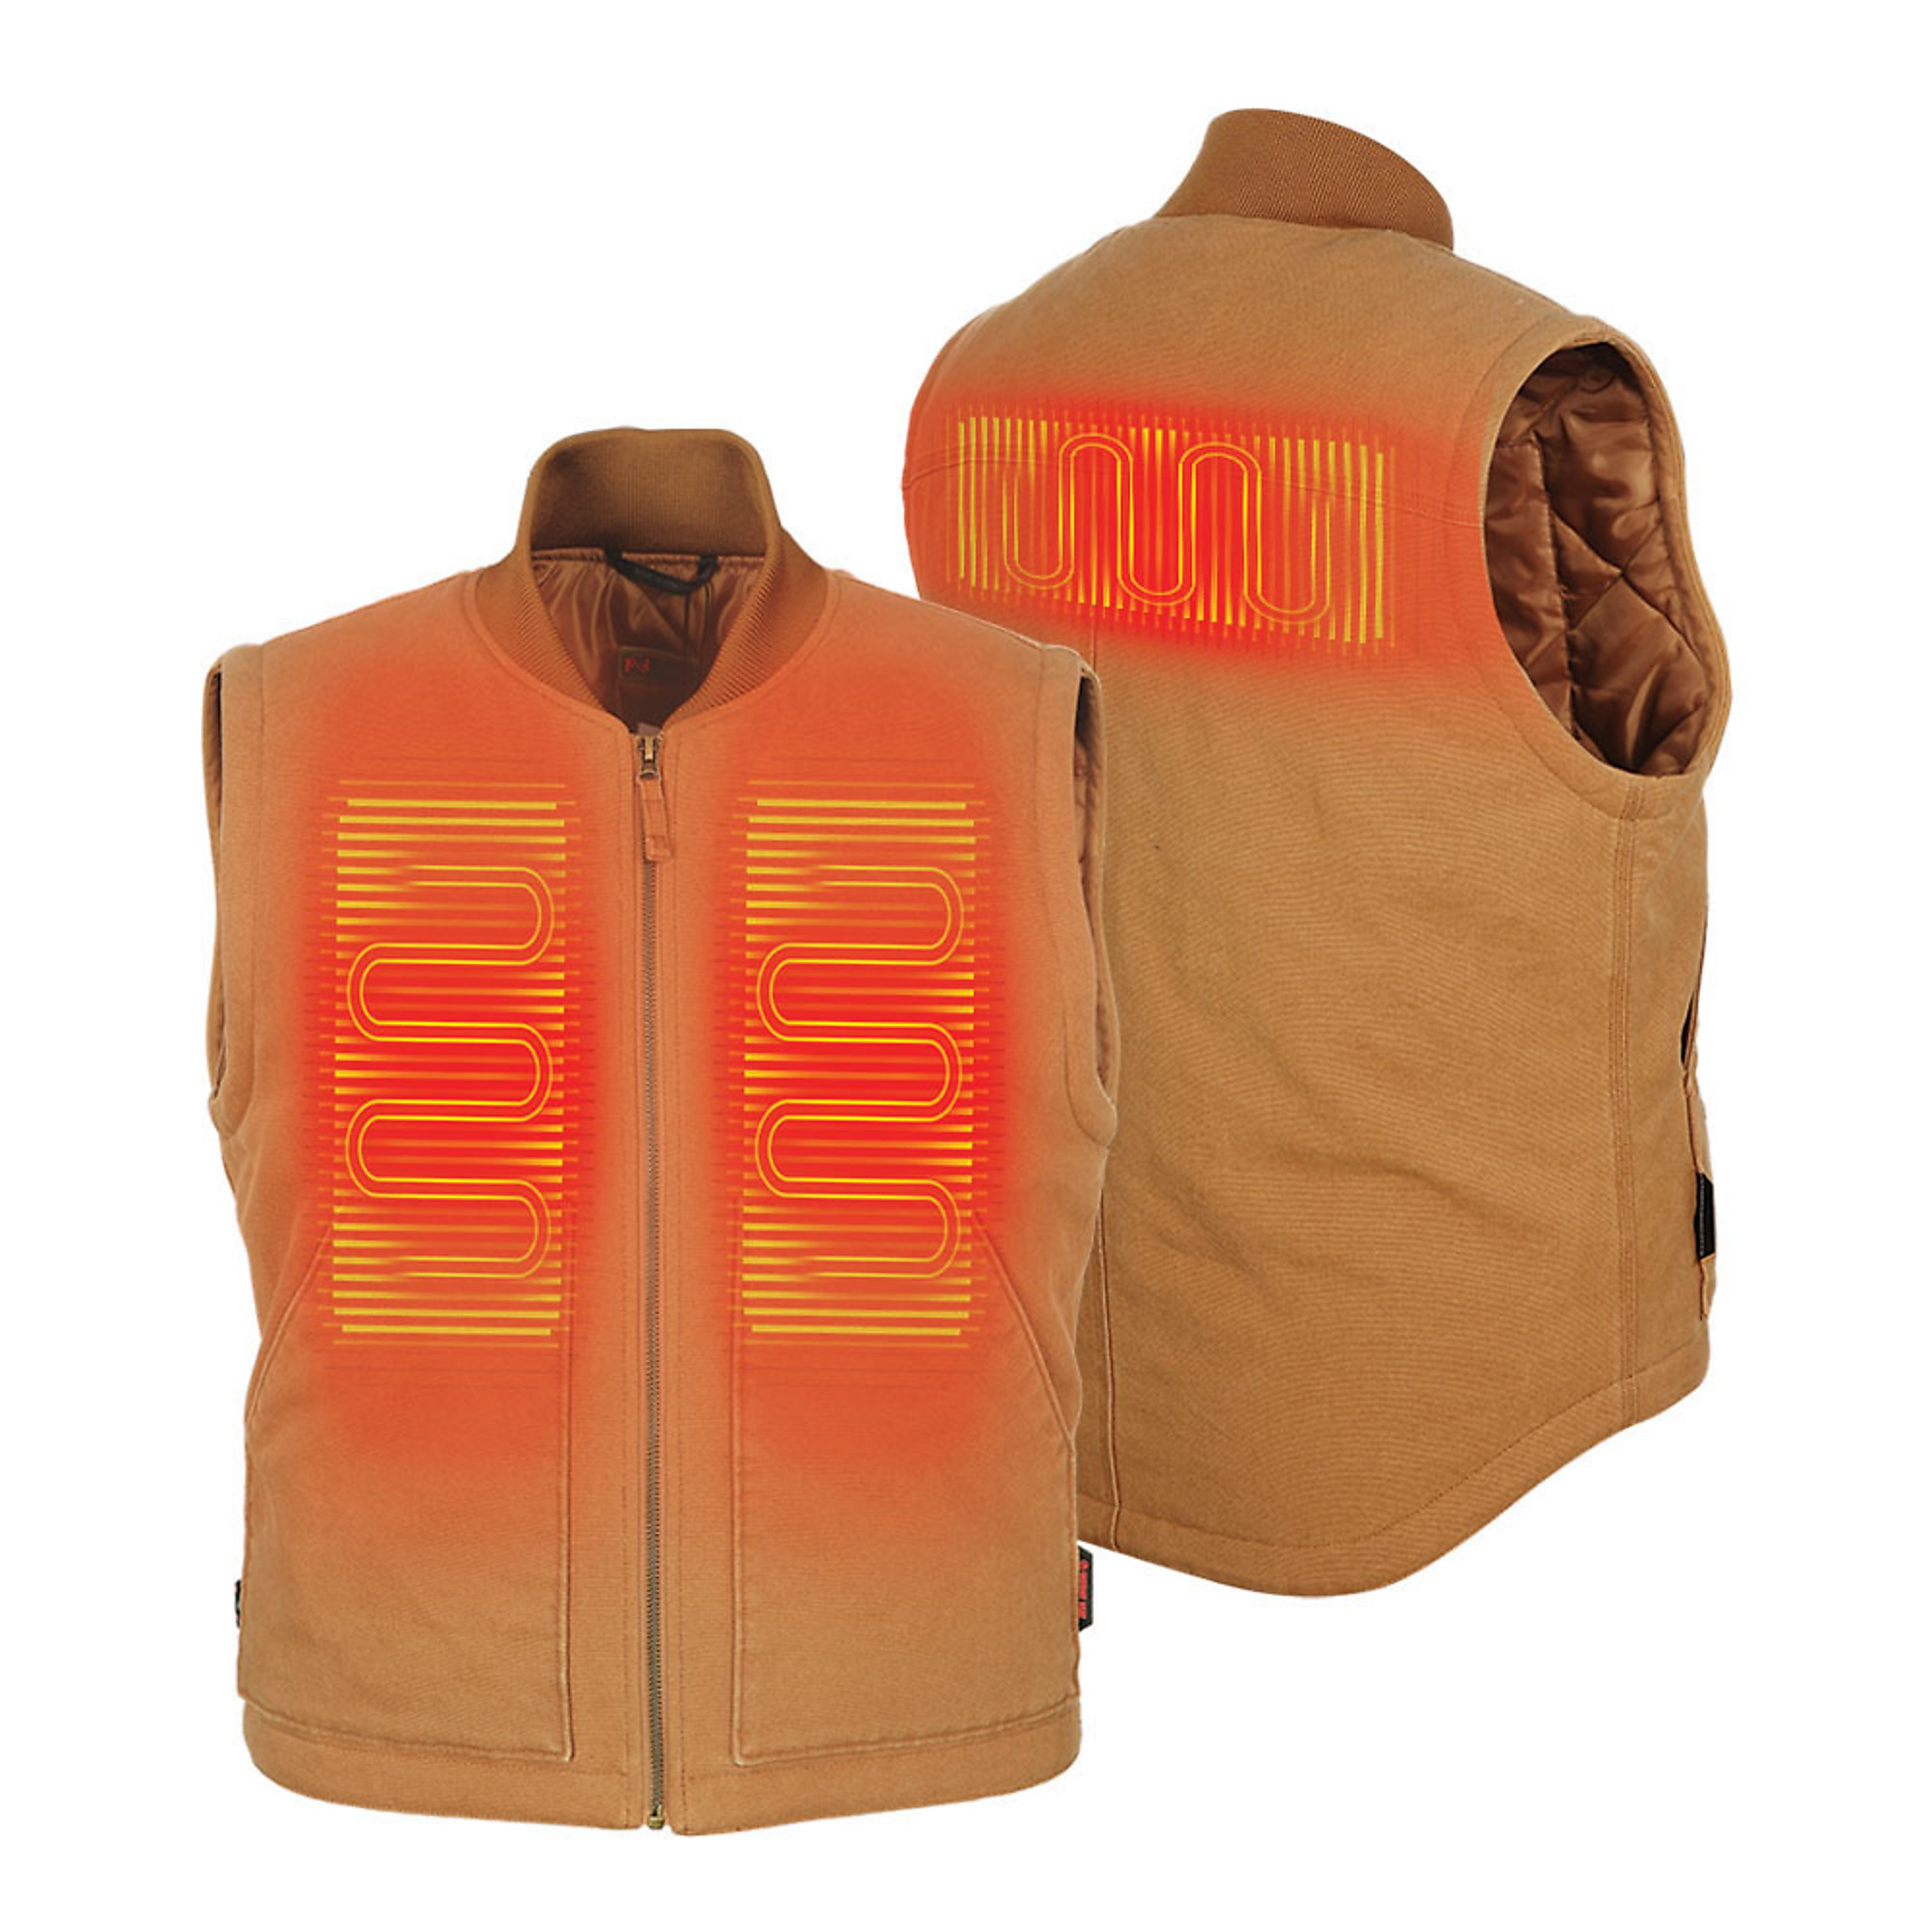 Fieldsheer, Men's Foreman 2.0 Vest with 7.4v Battery, Size 2XL, Color Tan, Model MWMV15130621